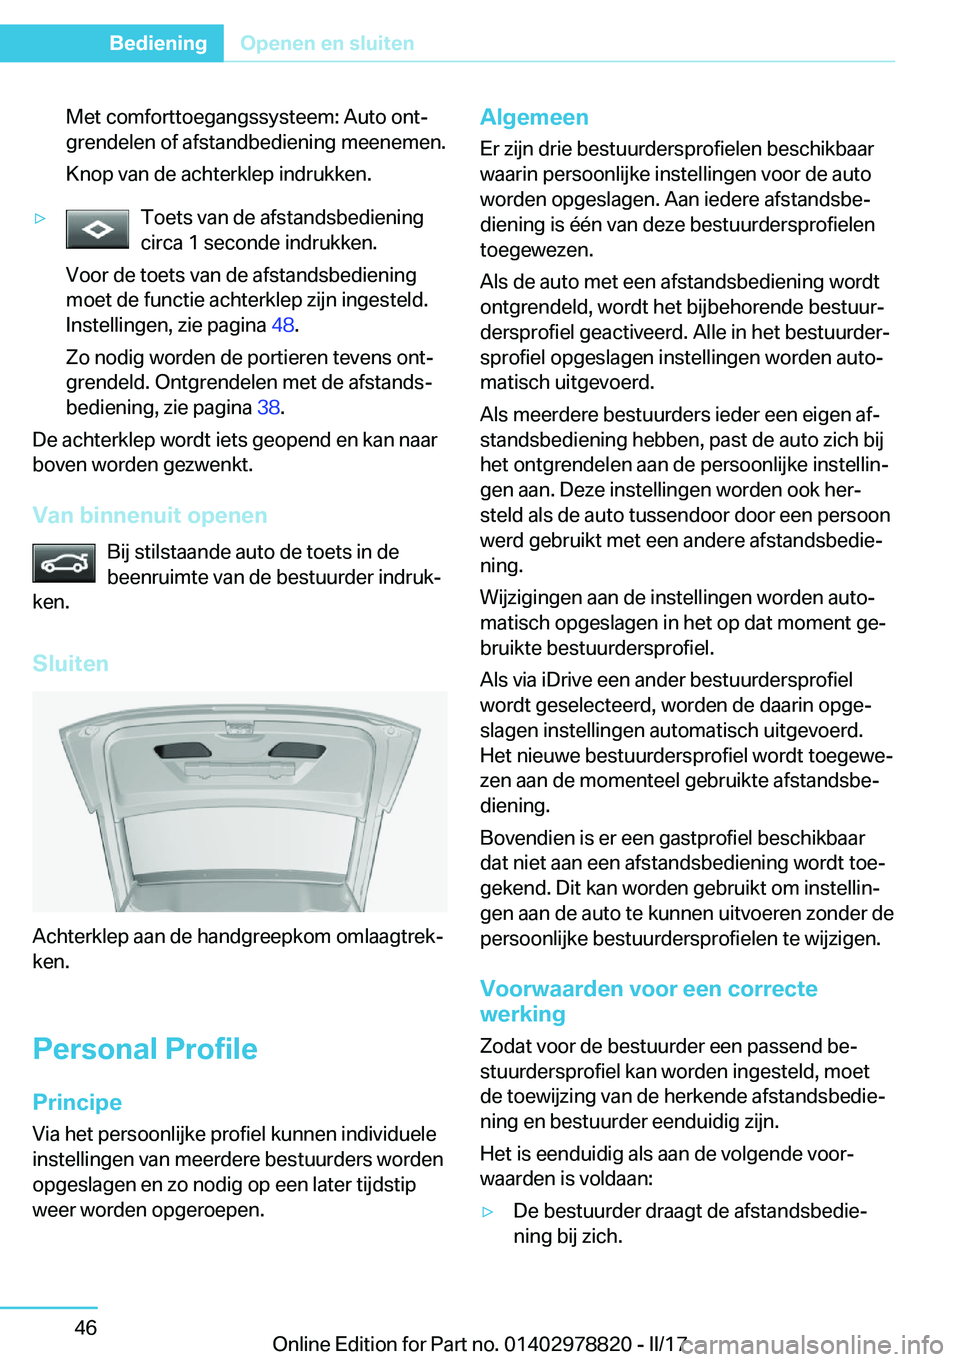 BMW I3 2017  Instructieboekjes (in Dutch) �M�e�t� �c�o�m�f�o�r�t�t�o�e�g�a�n�g�s�s�y�s�t�e�e�m�:� �A�u�t�o� �o�n�tj�g�r�e�n�d�e�l�e�n� �o�f� �a�f�s�t�a�n�d�b�e�d�i�e�n�i�n�g� �m�e�e�n�e�m�e�n�.
�K�n�o�p� �v�a�n� �d�e� �a�c�h�t�e�r�k�l�e�p� �